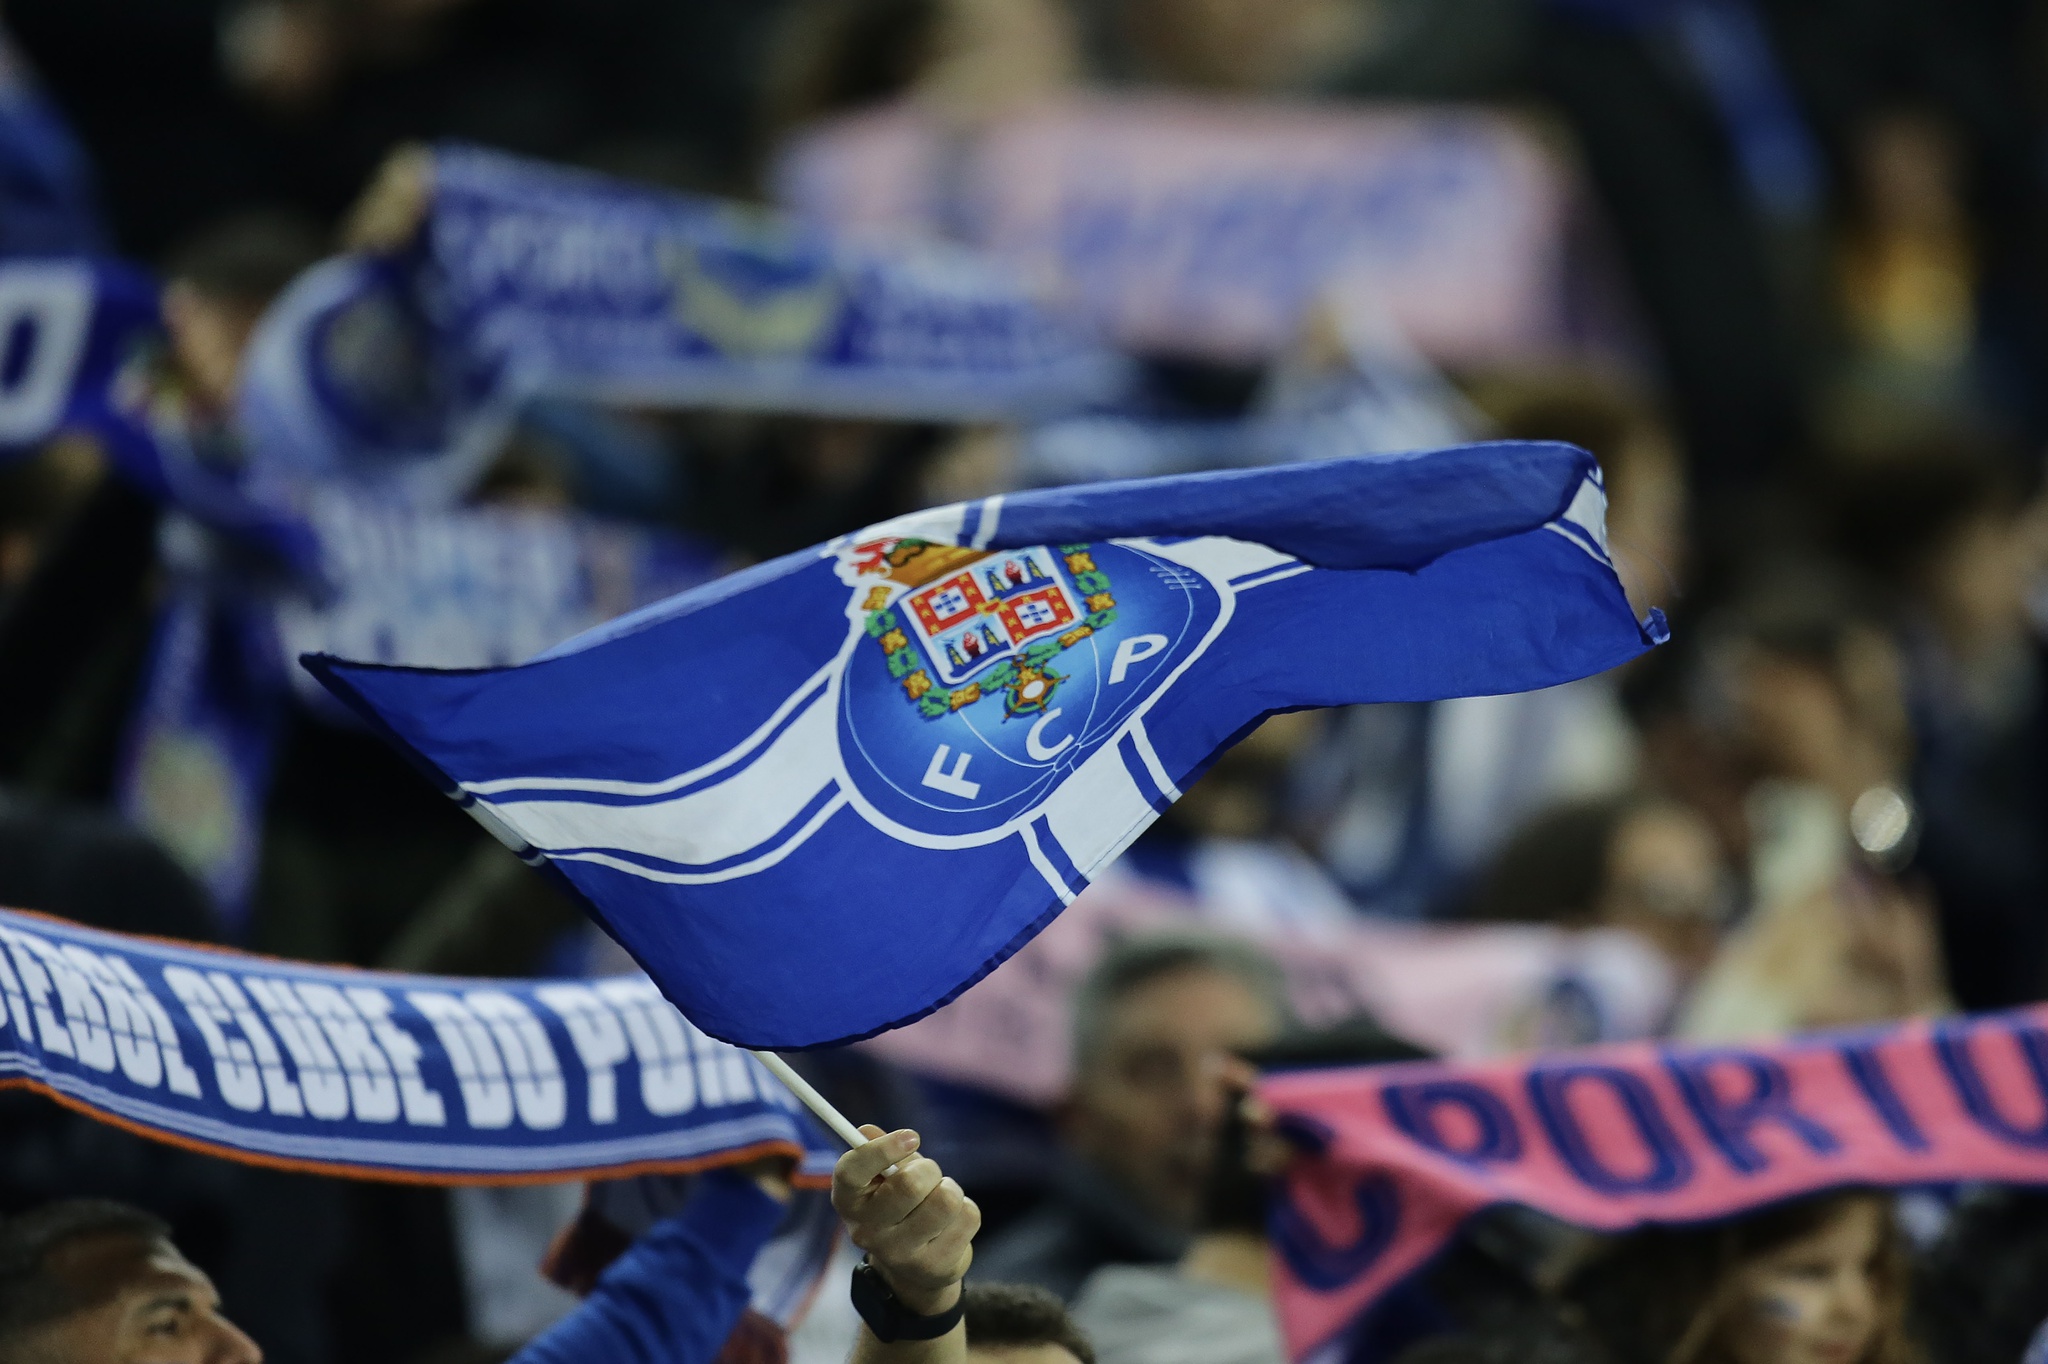 Buscas da PSP ao FC Porto: milhares de bilhetes apreendidos e 13 arguidos | Justiça